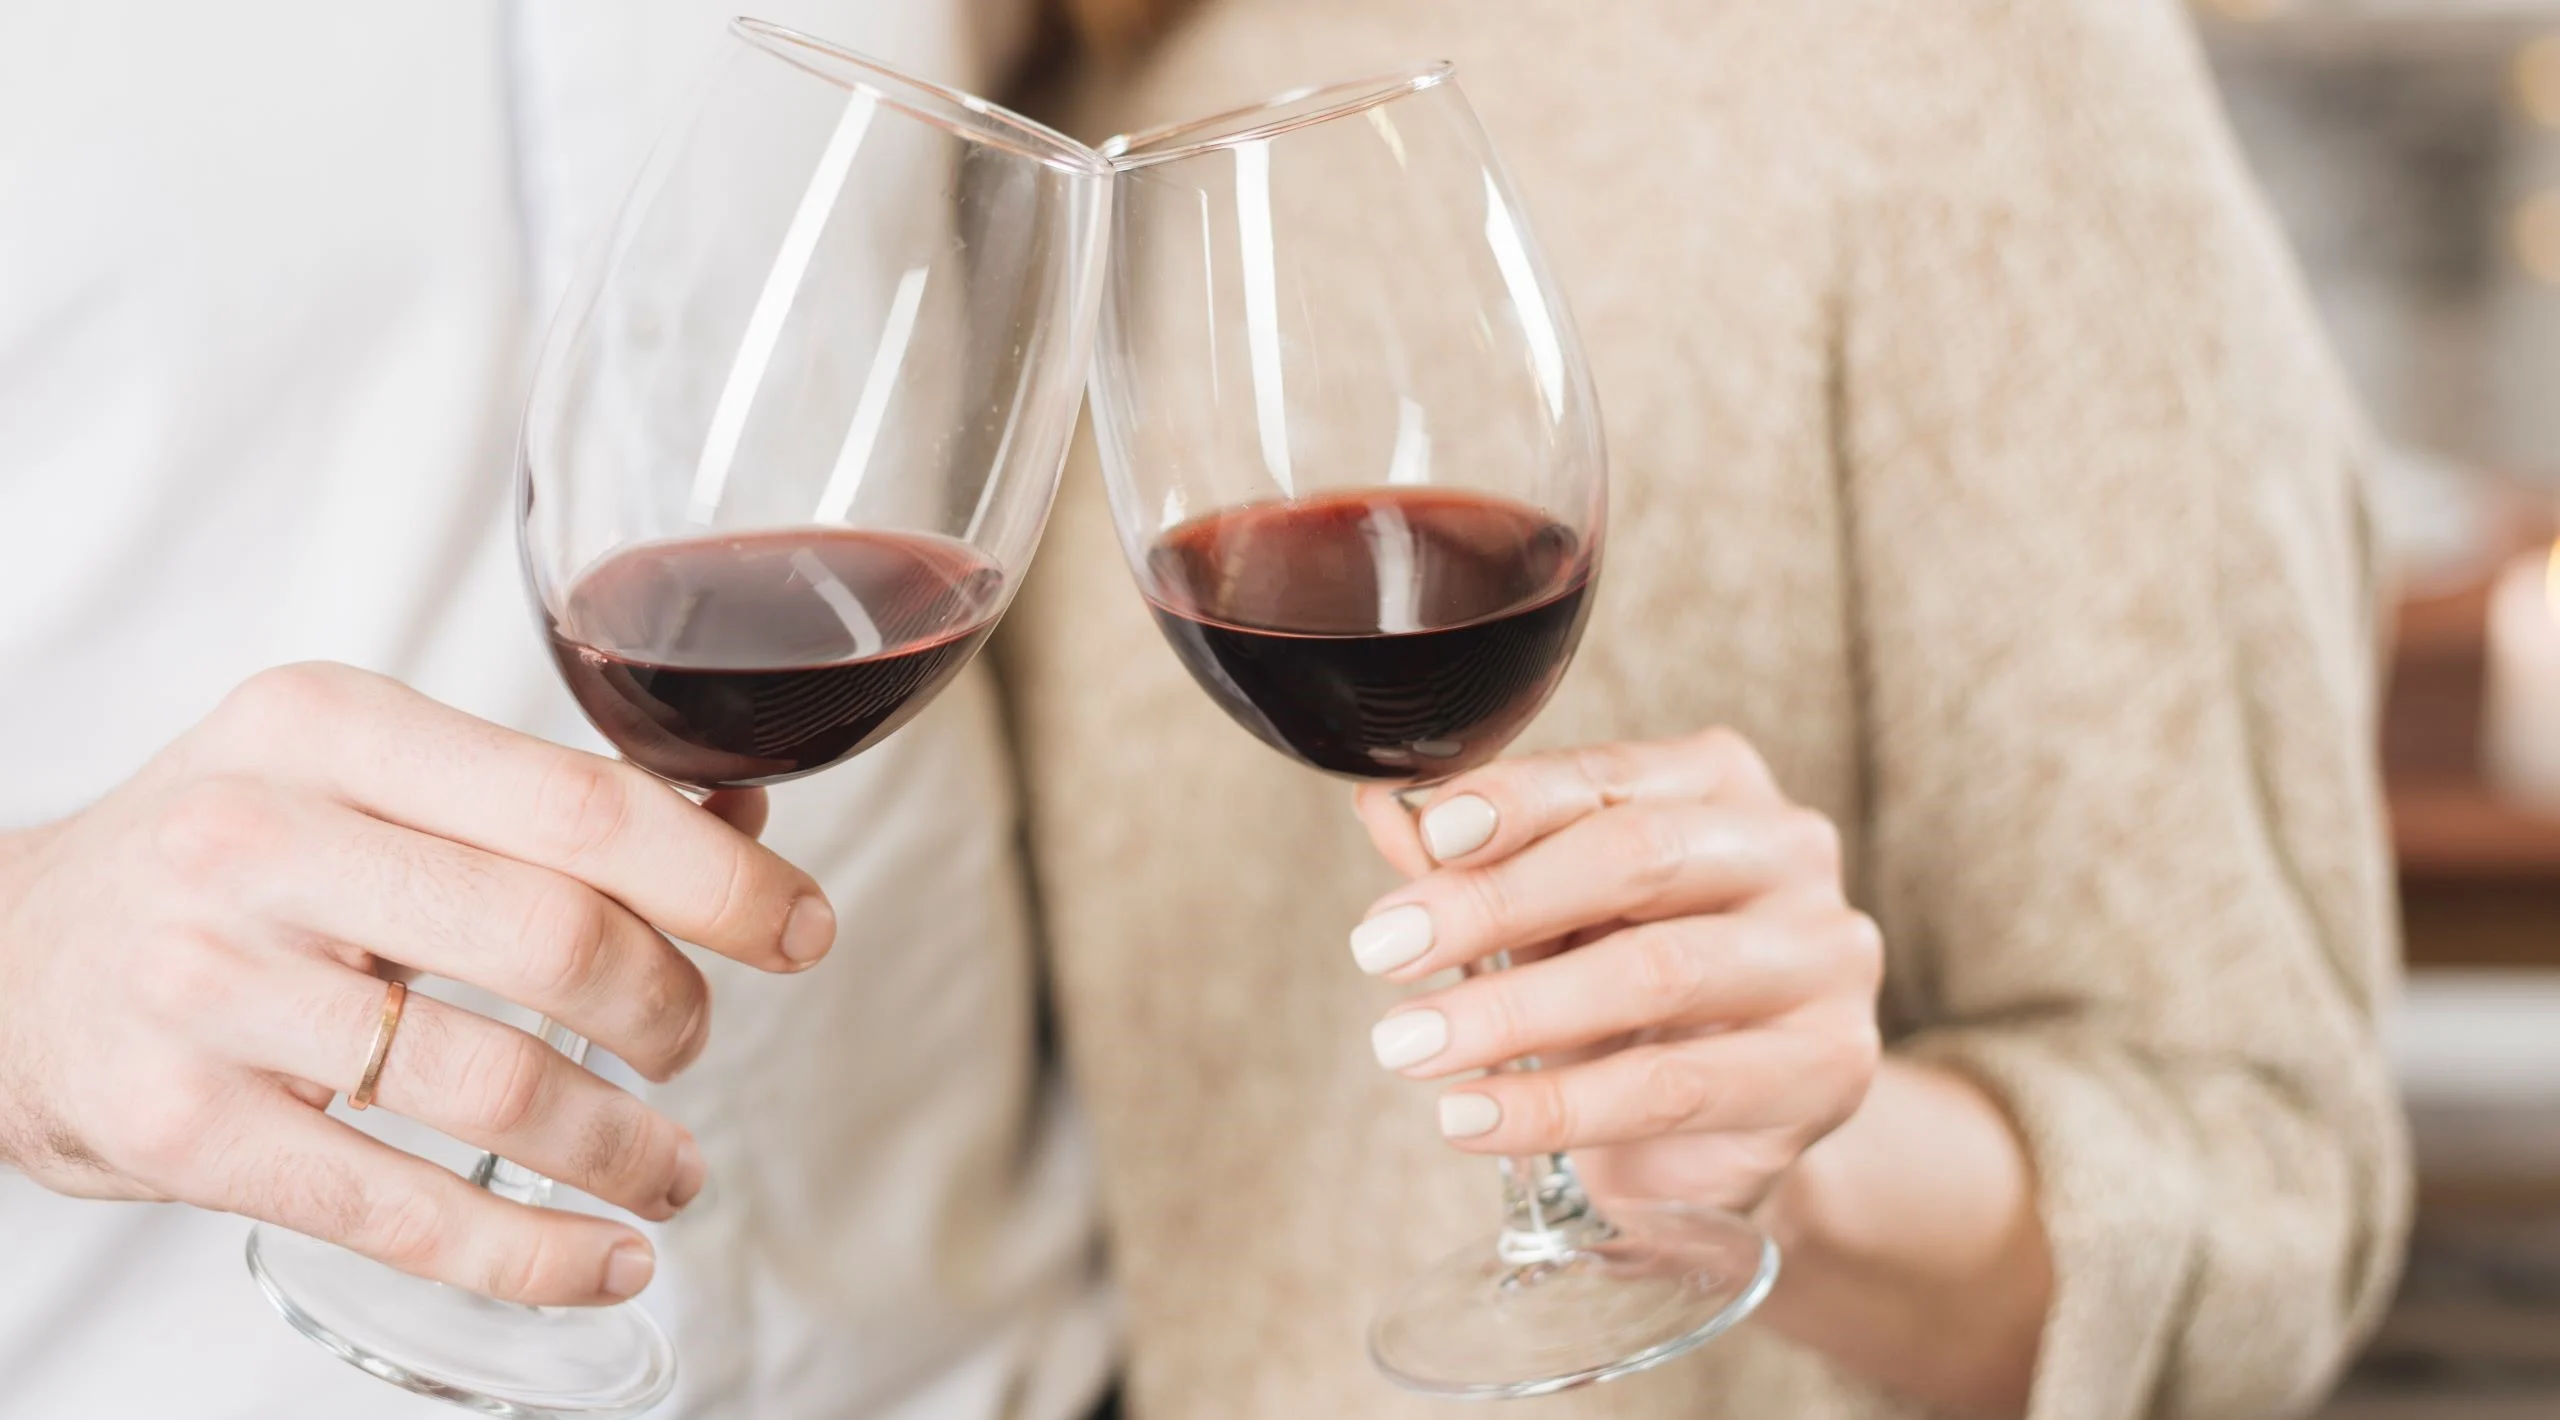 Tips para conservar el vino y que no altere su sabor